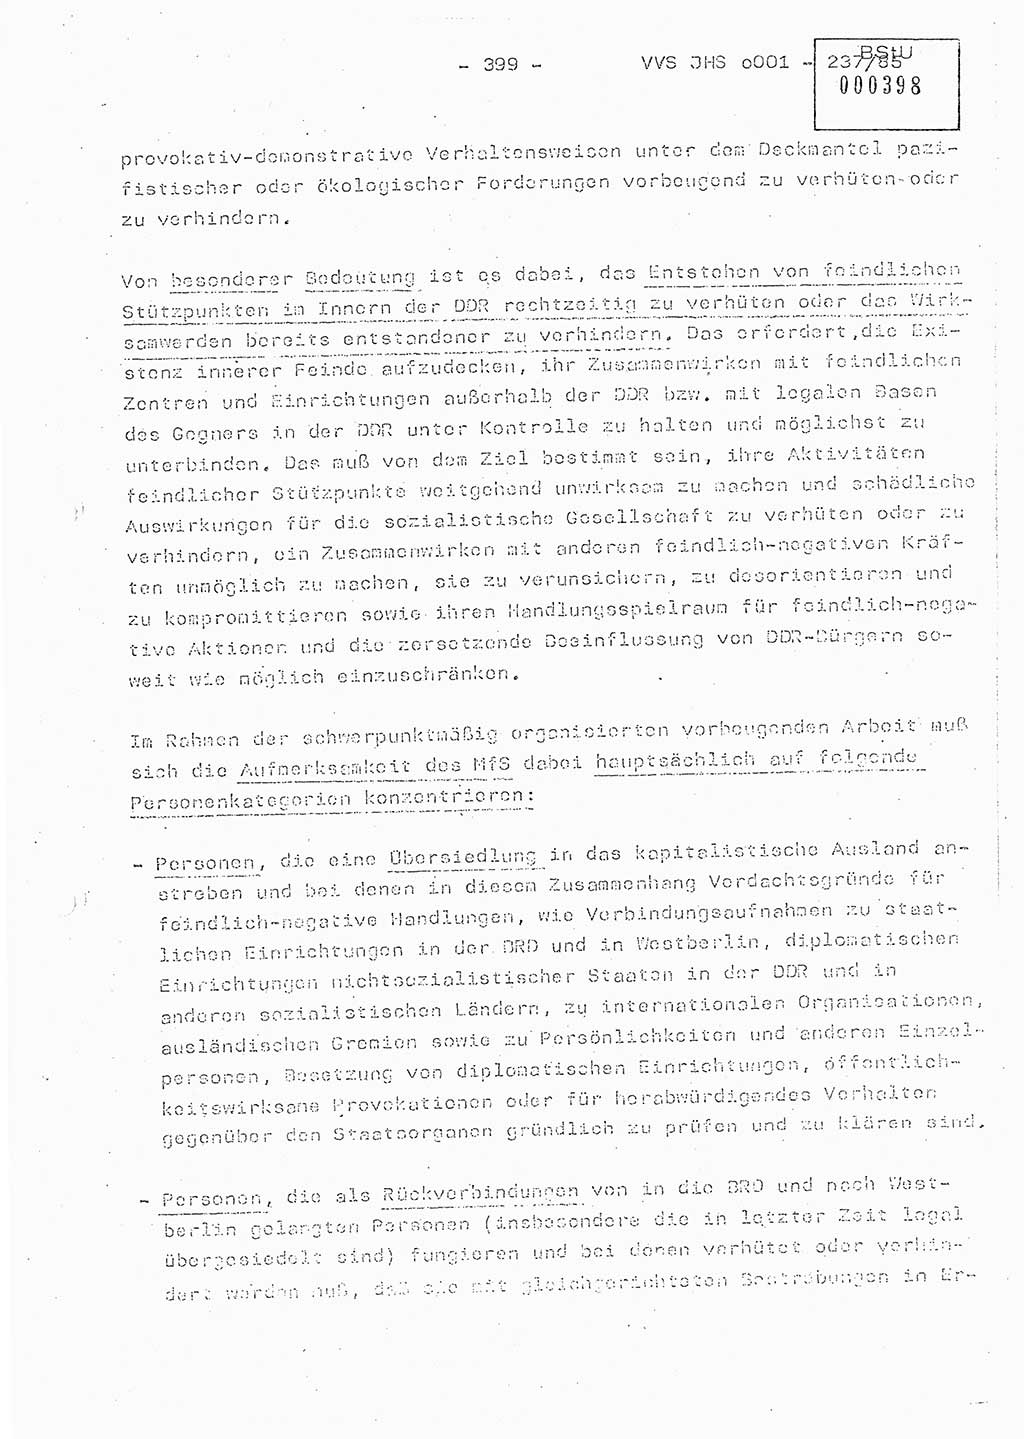 Dissertation Oberstleutnant Peter Jakulski (JHS), Oberstleutnat Christian Rudolph (HA Ⅸ), Major Horst Böttger (ZMD), Major Wolfgang Grüneberg (JHS), Major Albert Meutsch (JHS), Ministerium für Staatssicherheit (MfS) [Deutsche Demokratische Republik (DDR)], Juristische Hochschule (JHS), Vertrauliche Verschlußsache (VVS) o001-237/85, Potsdam 1985, Seite 399 (Diss. MfS DDR JHS VVS o001-237/85 1985, S. 399)